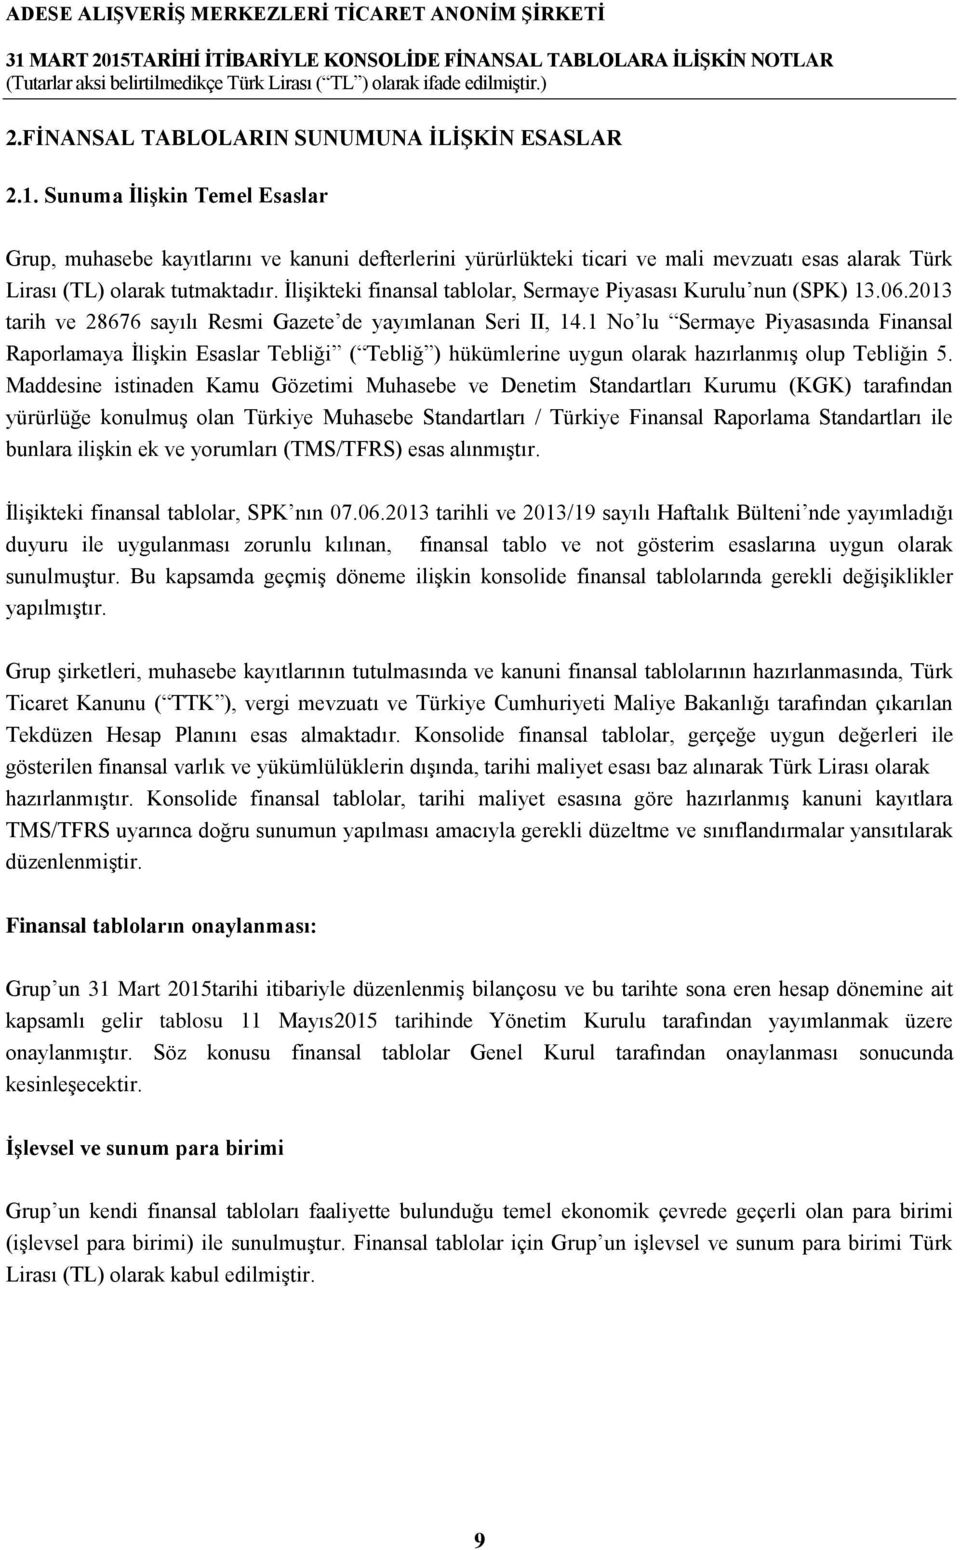 İlişikteki finansal tablolar, Sermaye Piyasası Kurulu nun (SPK) 13.06.2013 tarih ve 28676 sayılı Resmi Gazete de yayımlanan Seri II, 14.